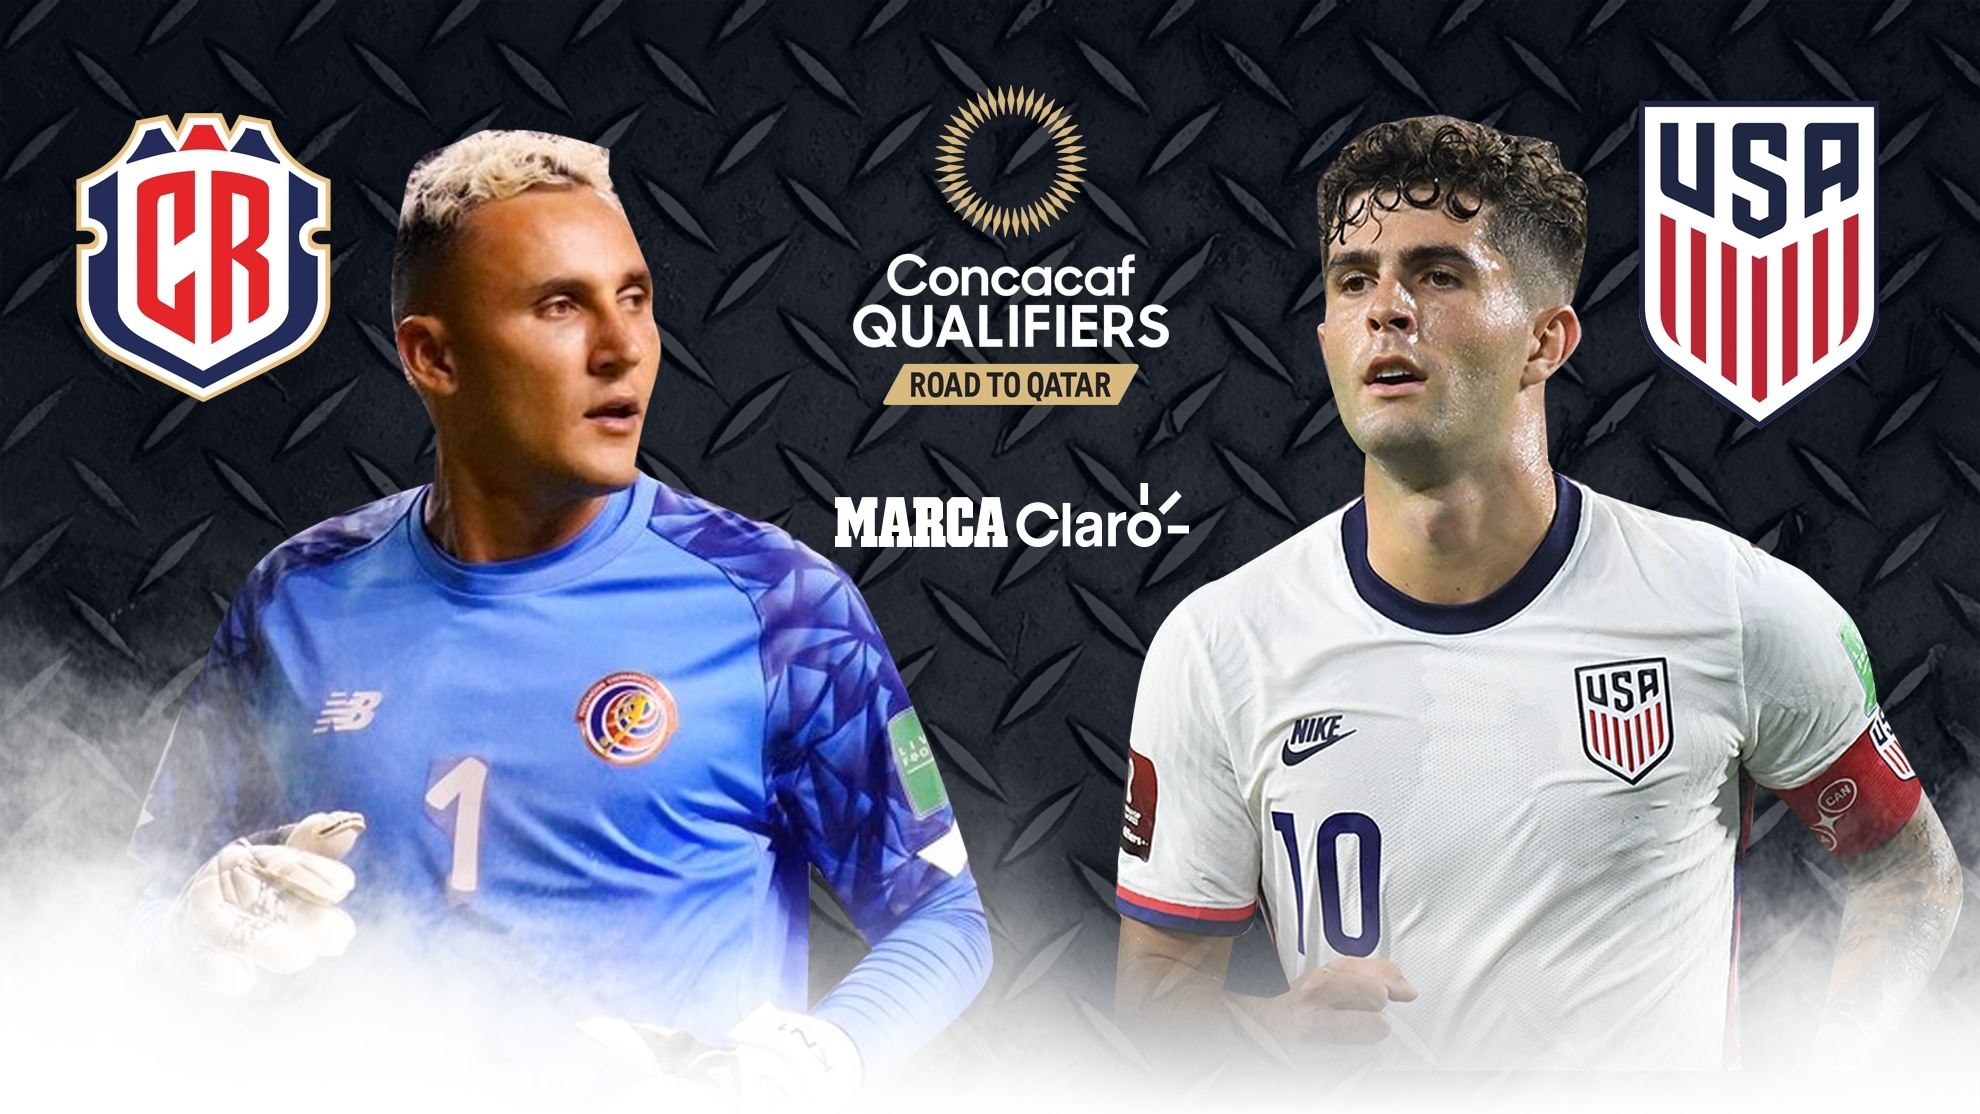 Costa Rica vs Estados Unidos en vivo: Partido de las Eliminatorias Concacaf rumbo a Qatar 2022, en directo - Marca USA